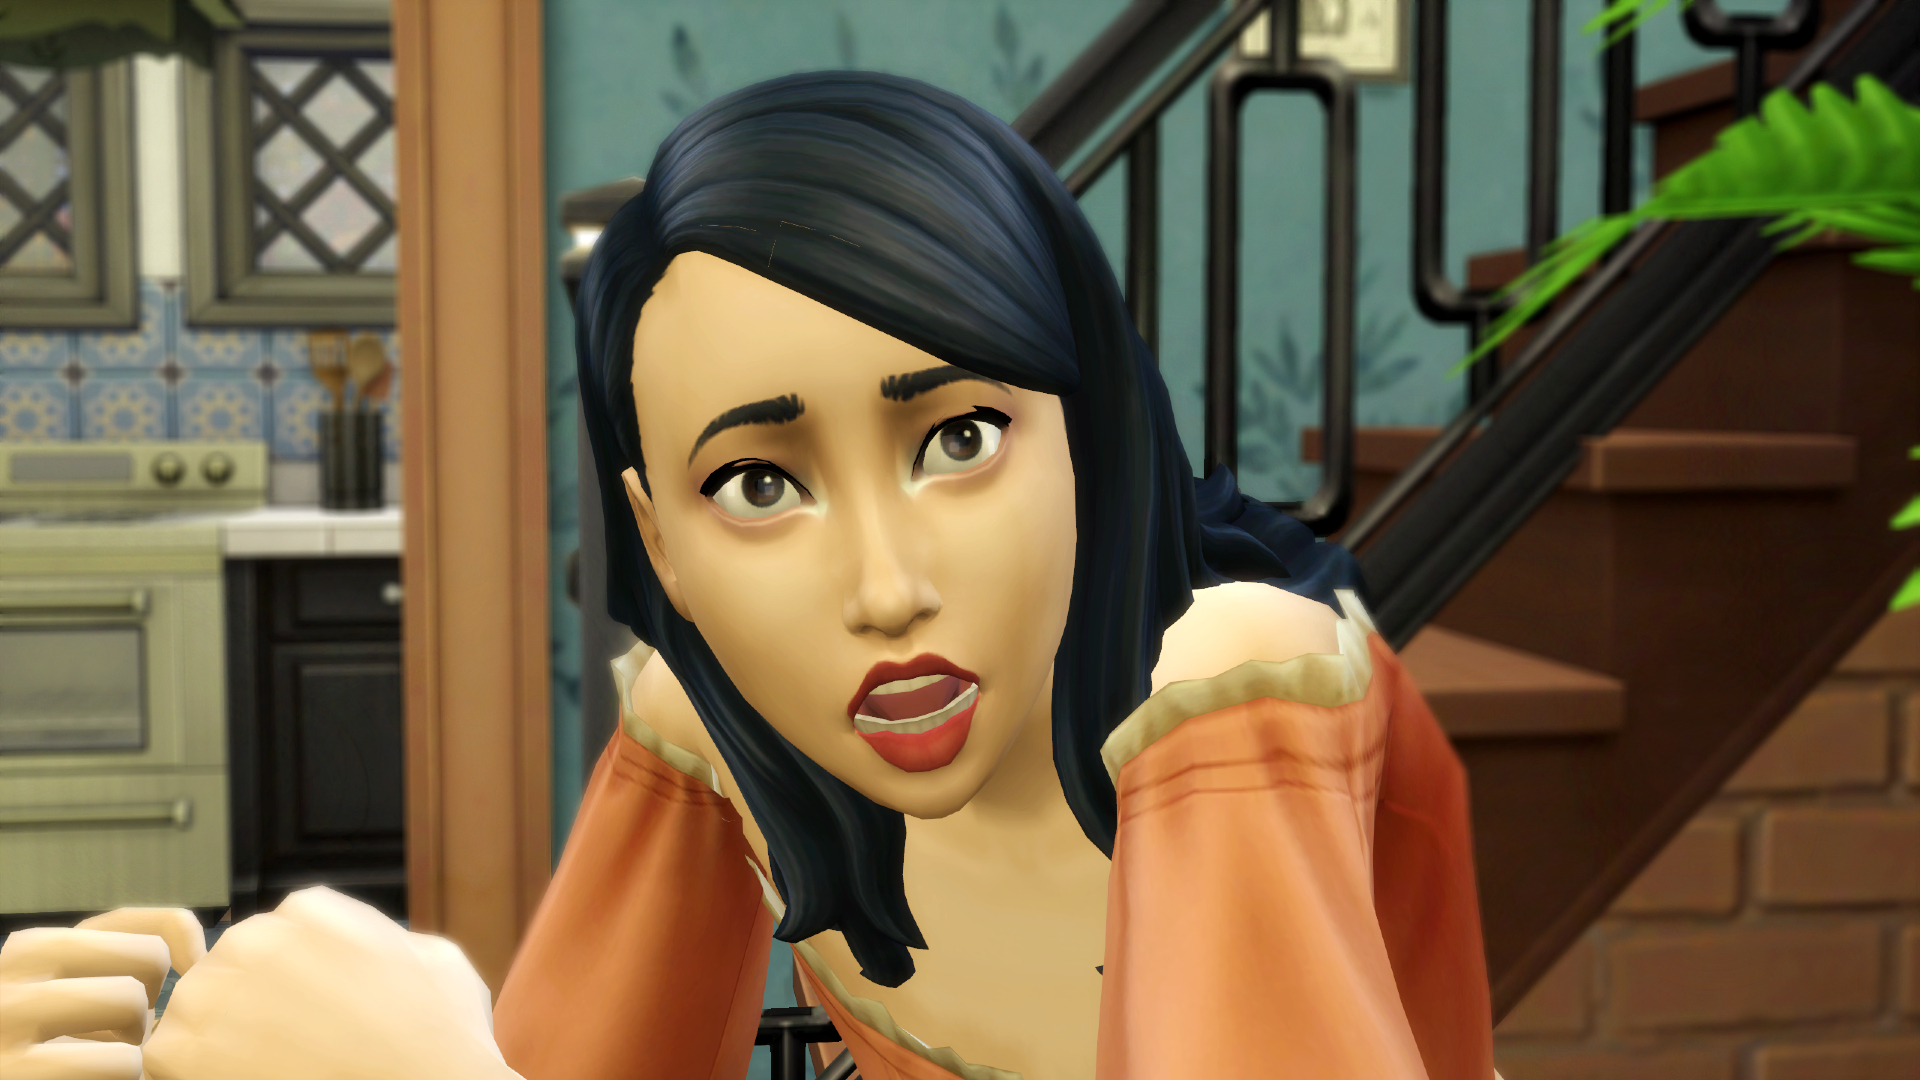 Sims 4 güncellemesi 'tamamen kabul edilemez içeriği' galerisinden temizliyor